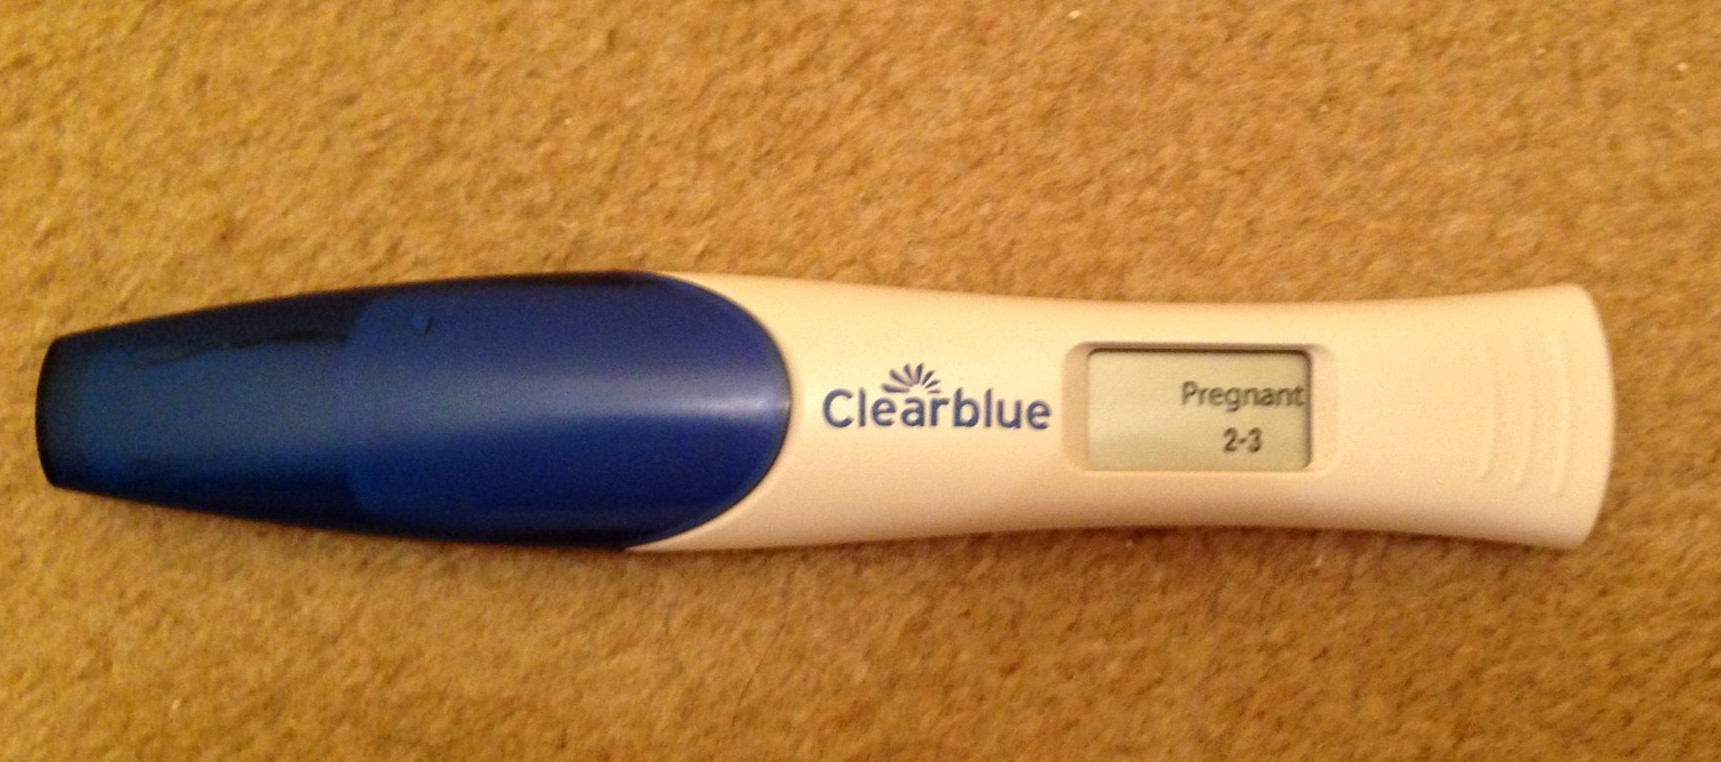 Тест на беременность ошибка. Электронный тест на беременность. Clearblue Digital тест ошибки. Теста на беременность ошибочный электронный. Тест Clearblue может ли ошибиться на беременность.